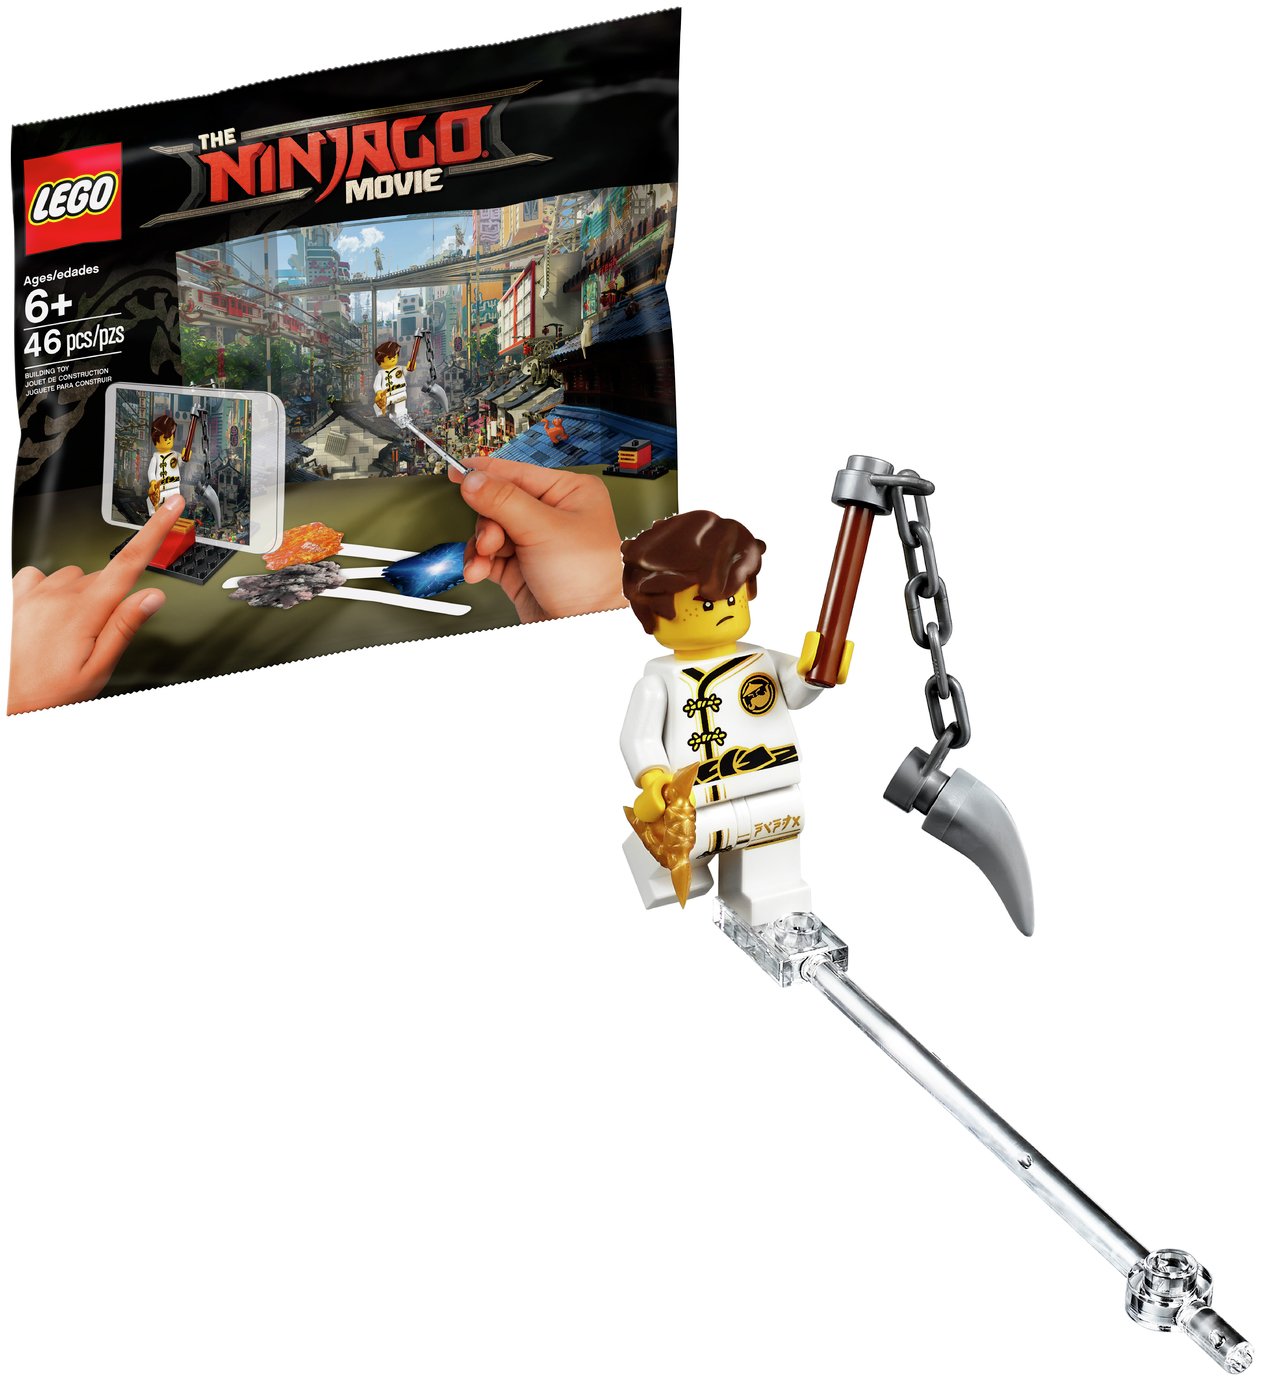 LEGO Ninjago Movie Maker - 5004394